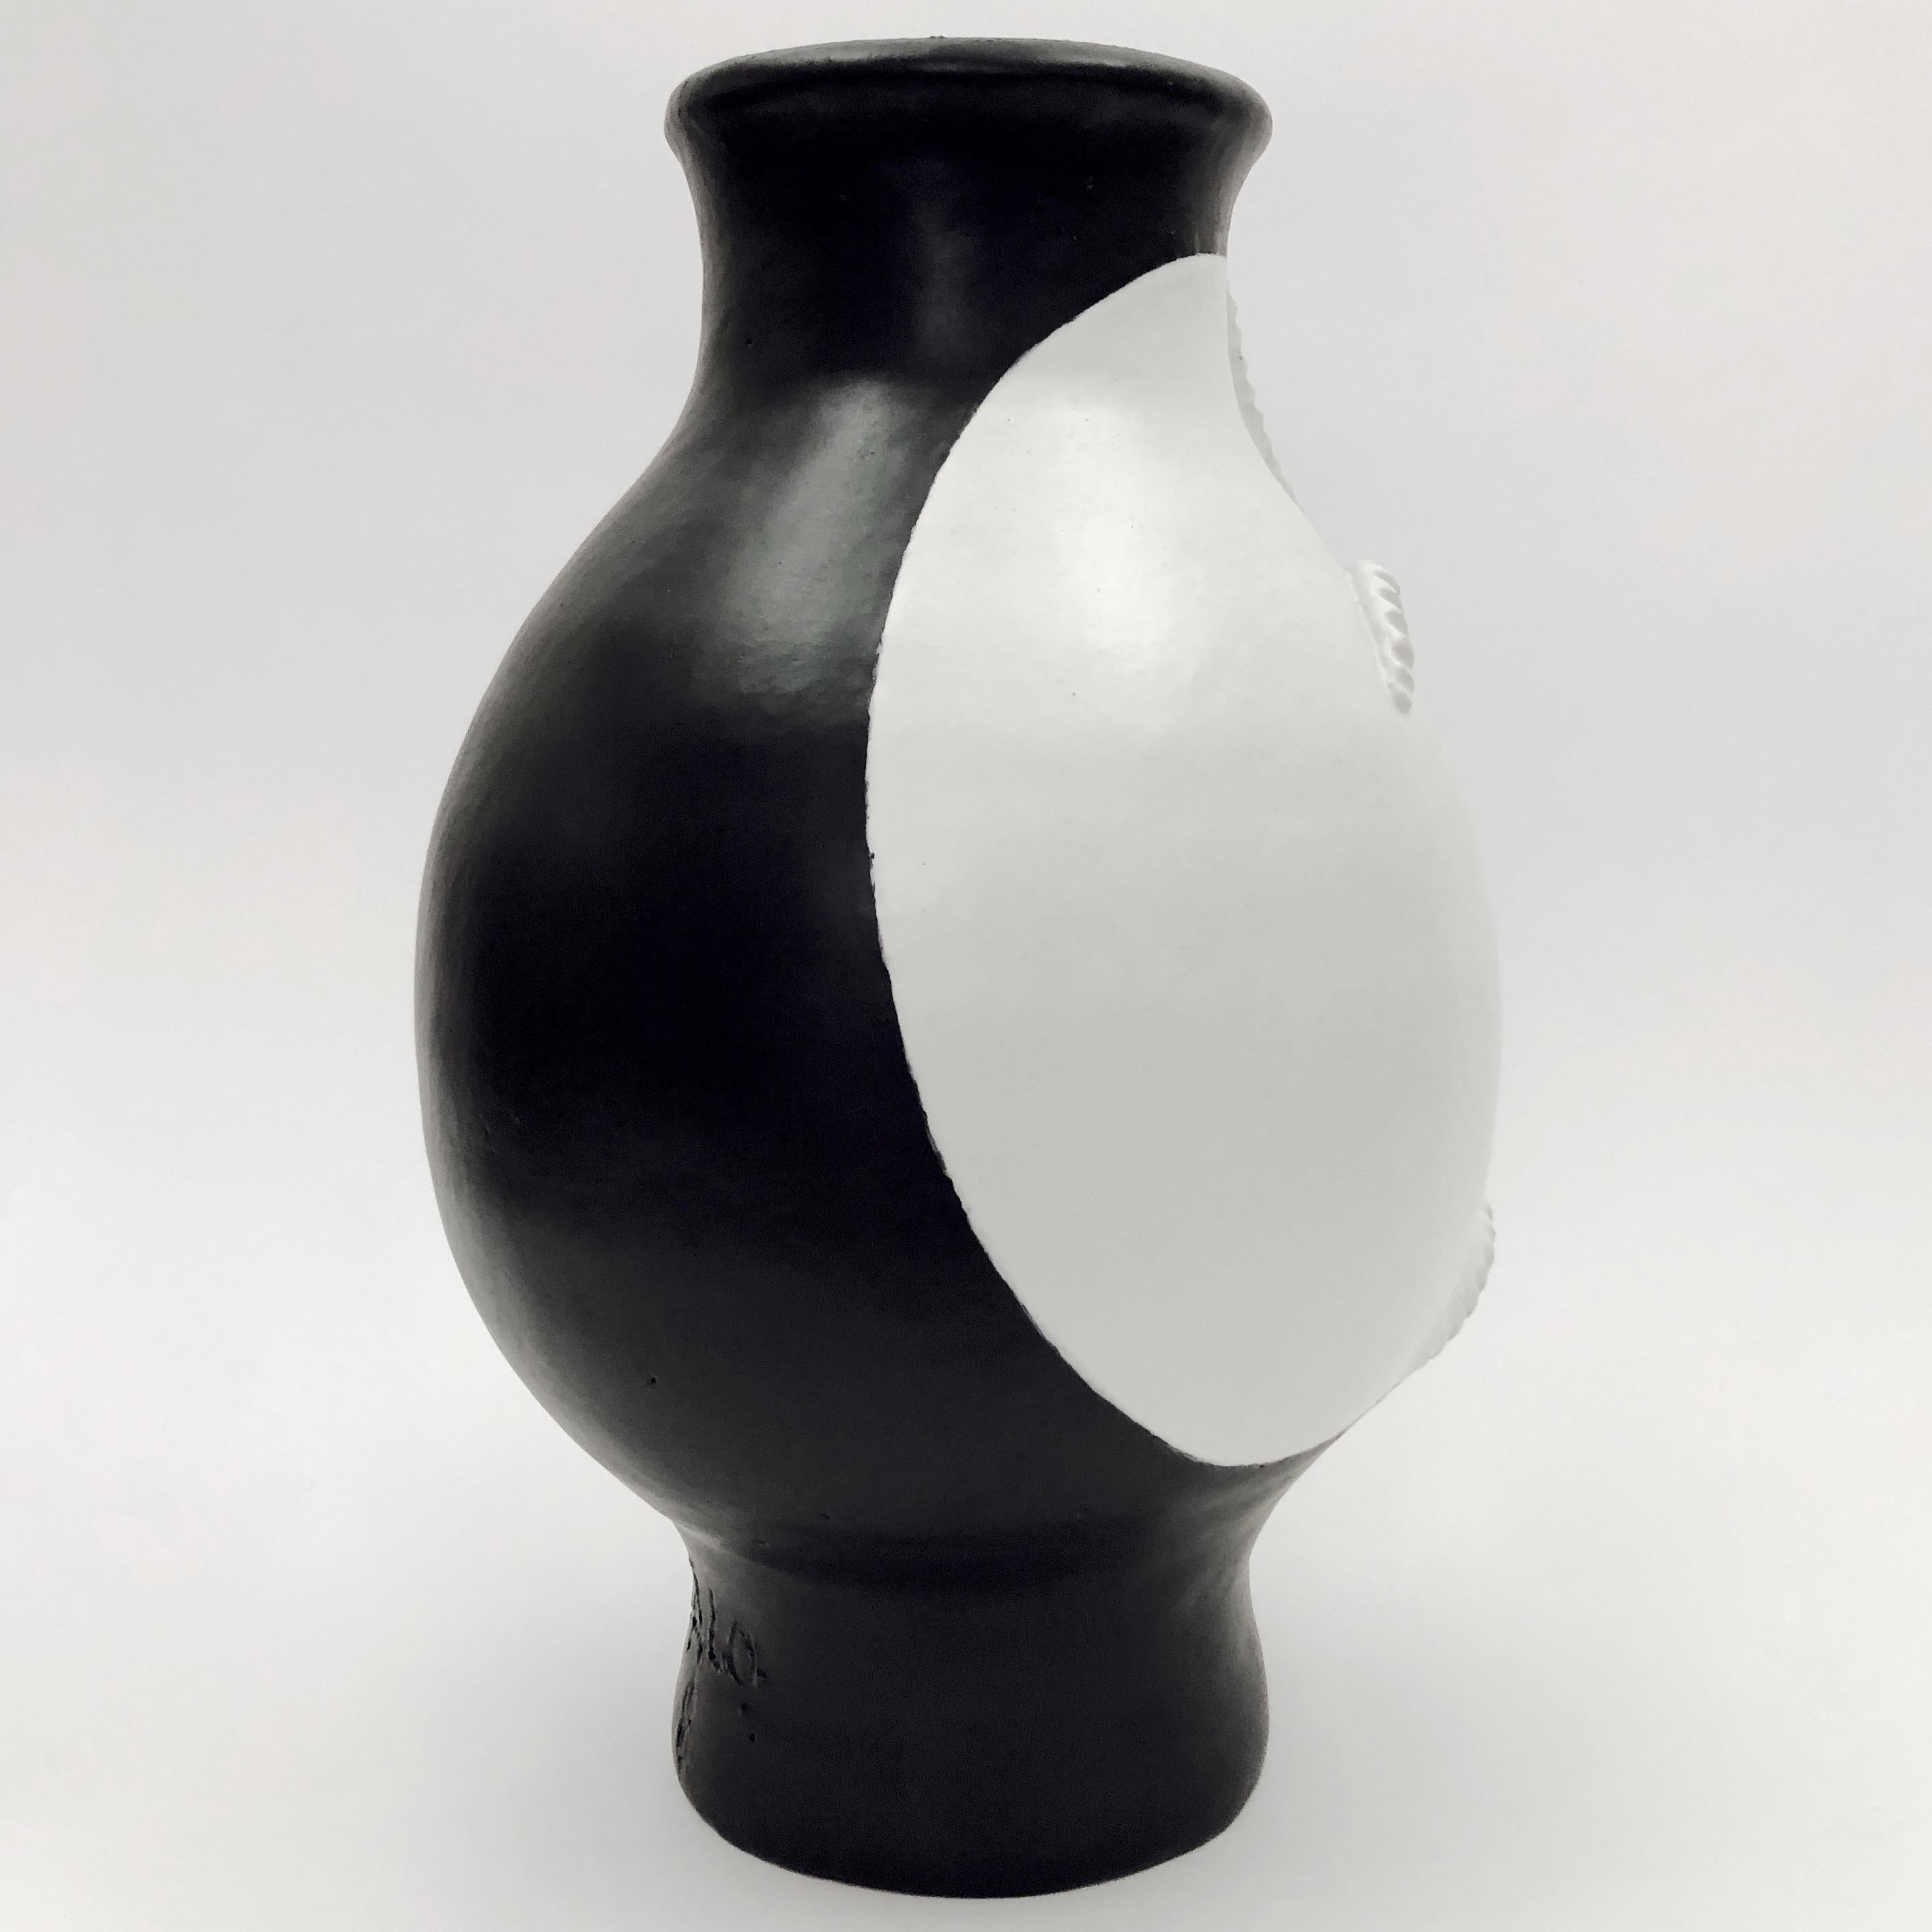 Dalo, Monumental Black and White Ceramic Vase 1